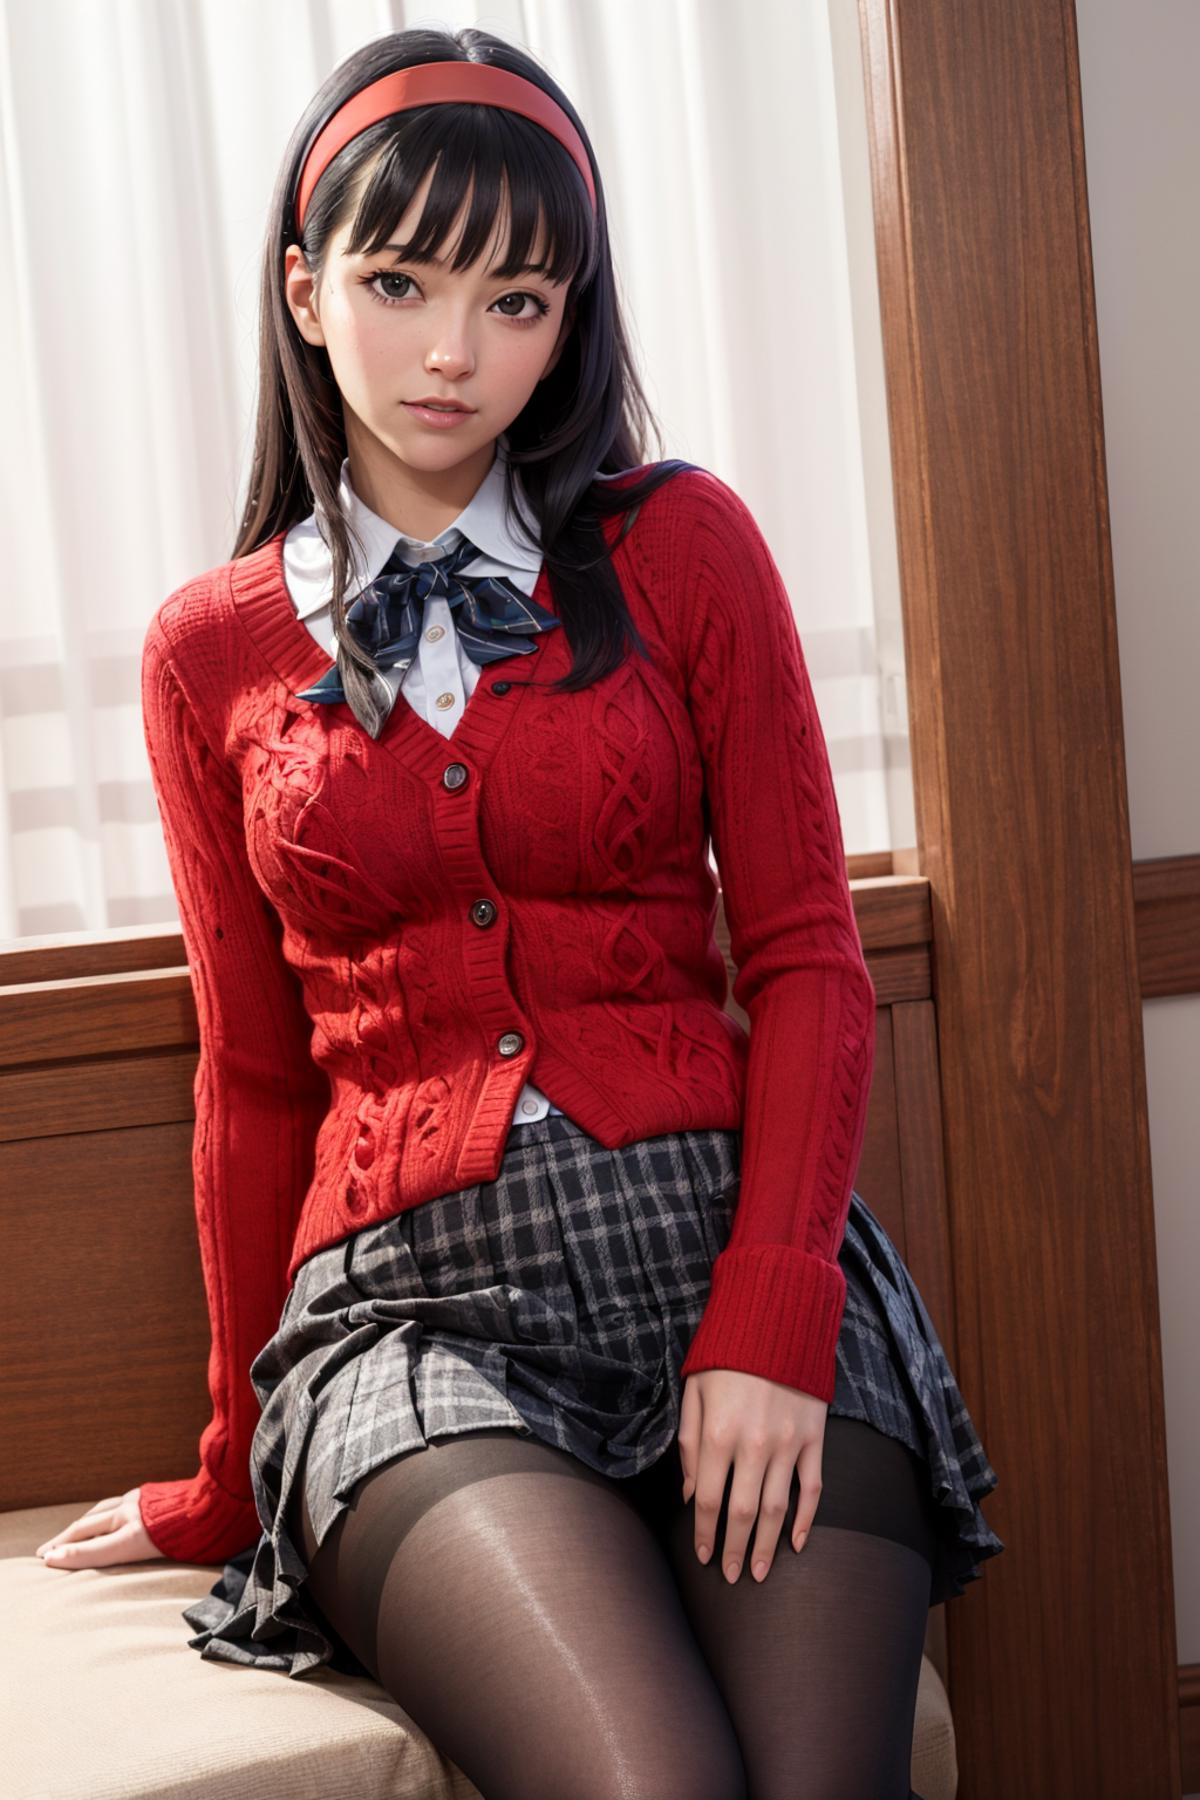 Yukiko amagi (Persona 4) image by poweredjj